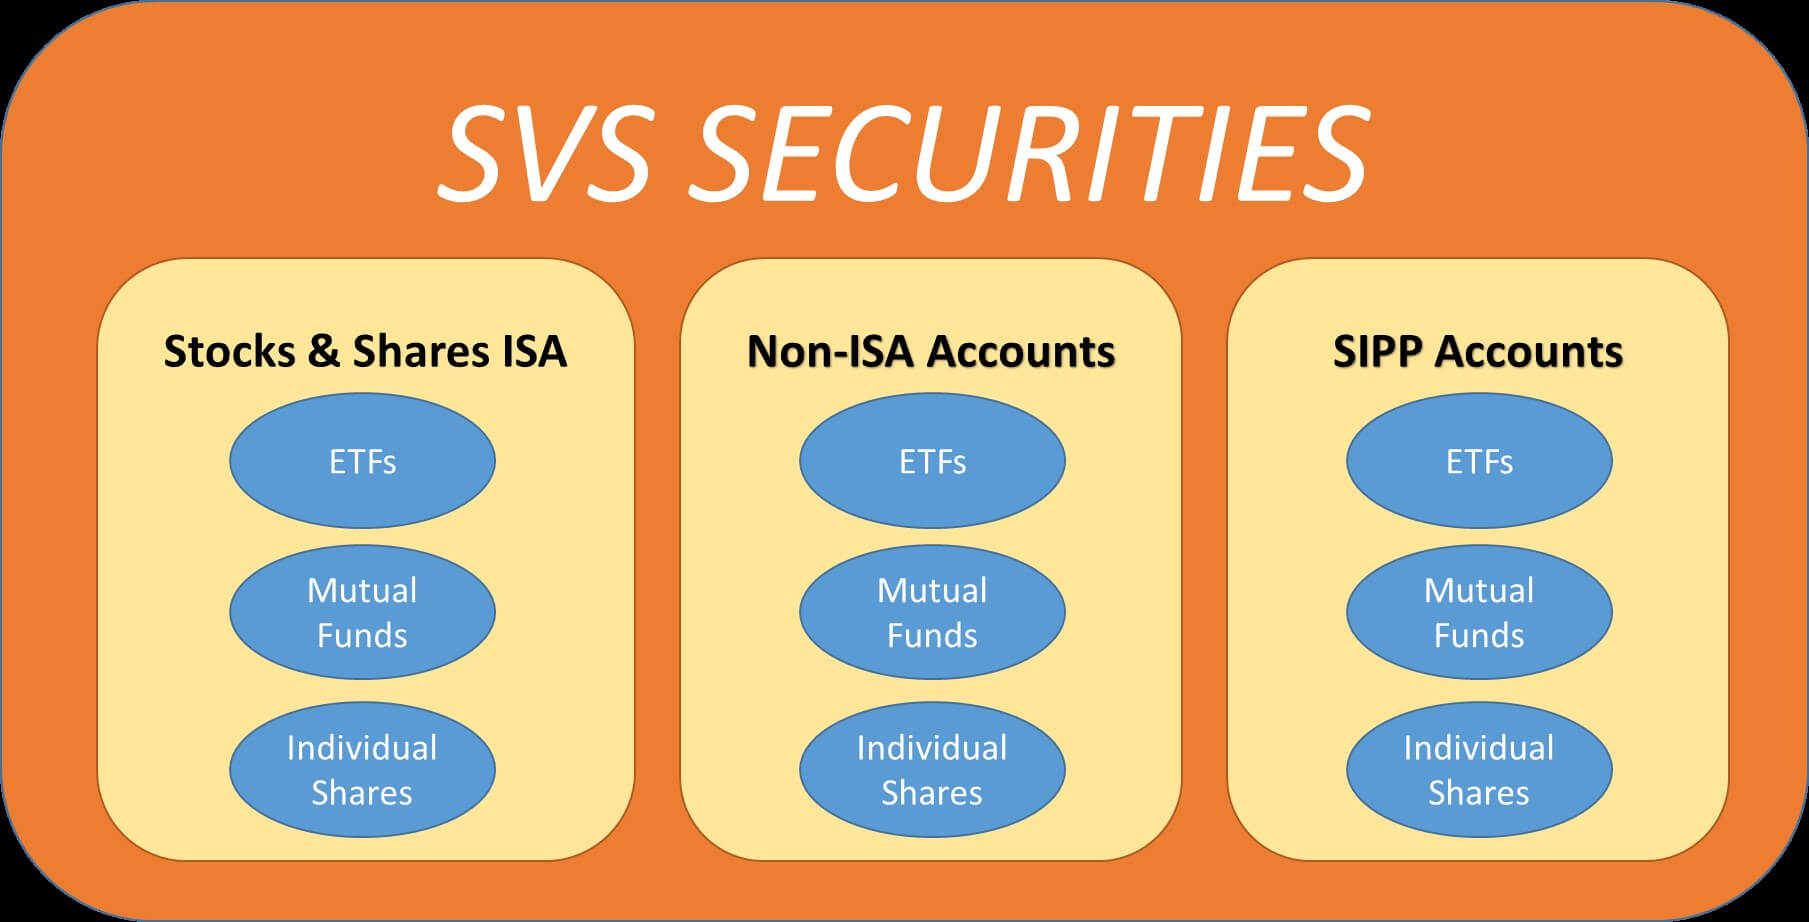 SVS Securities